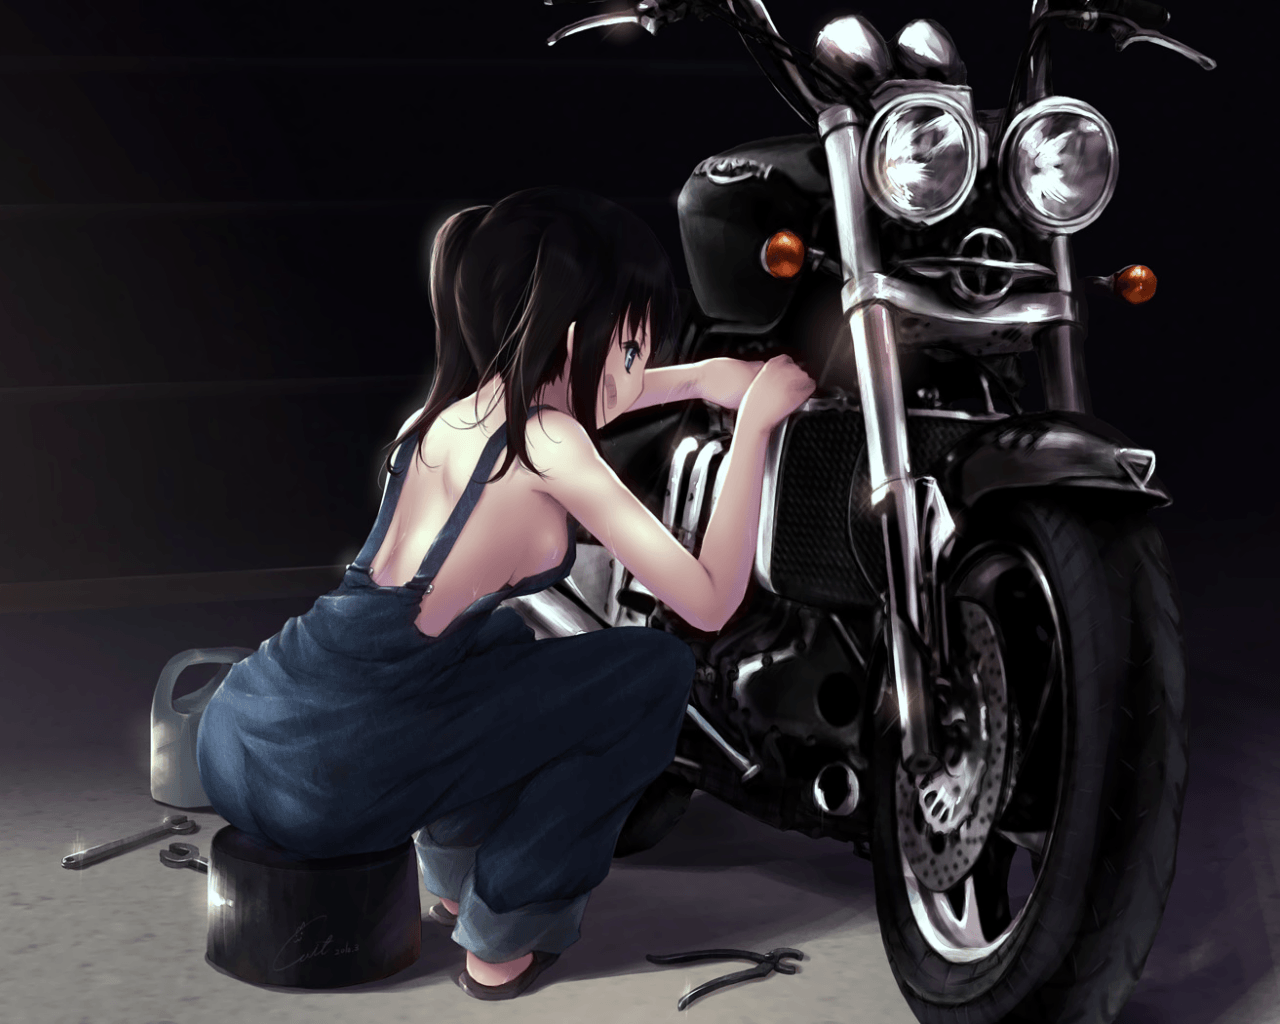 Wallpaper mechanic girl motorcycle